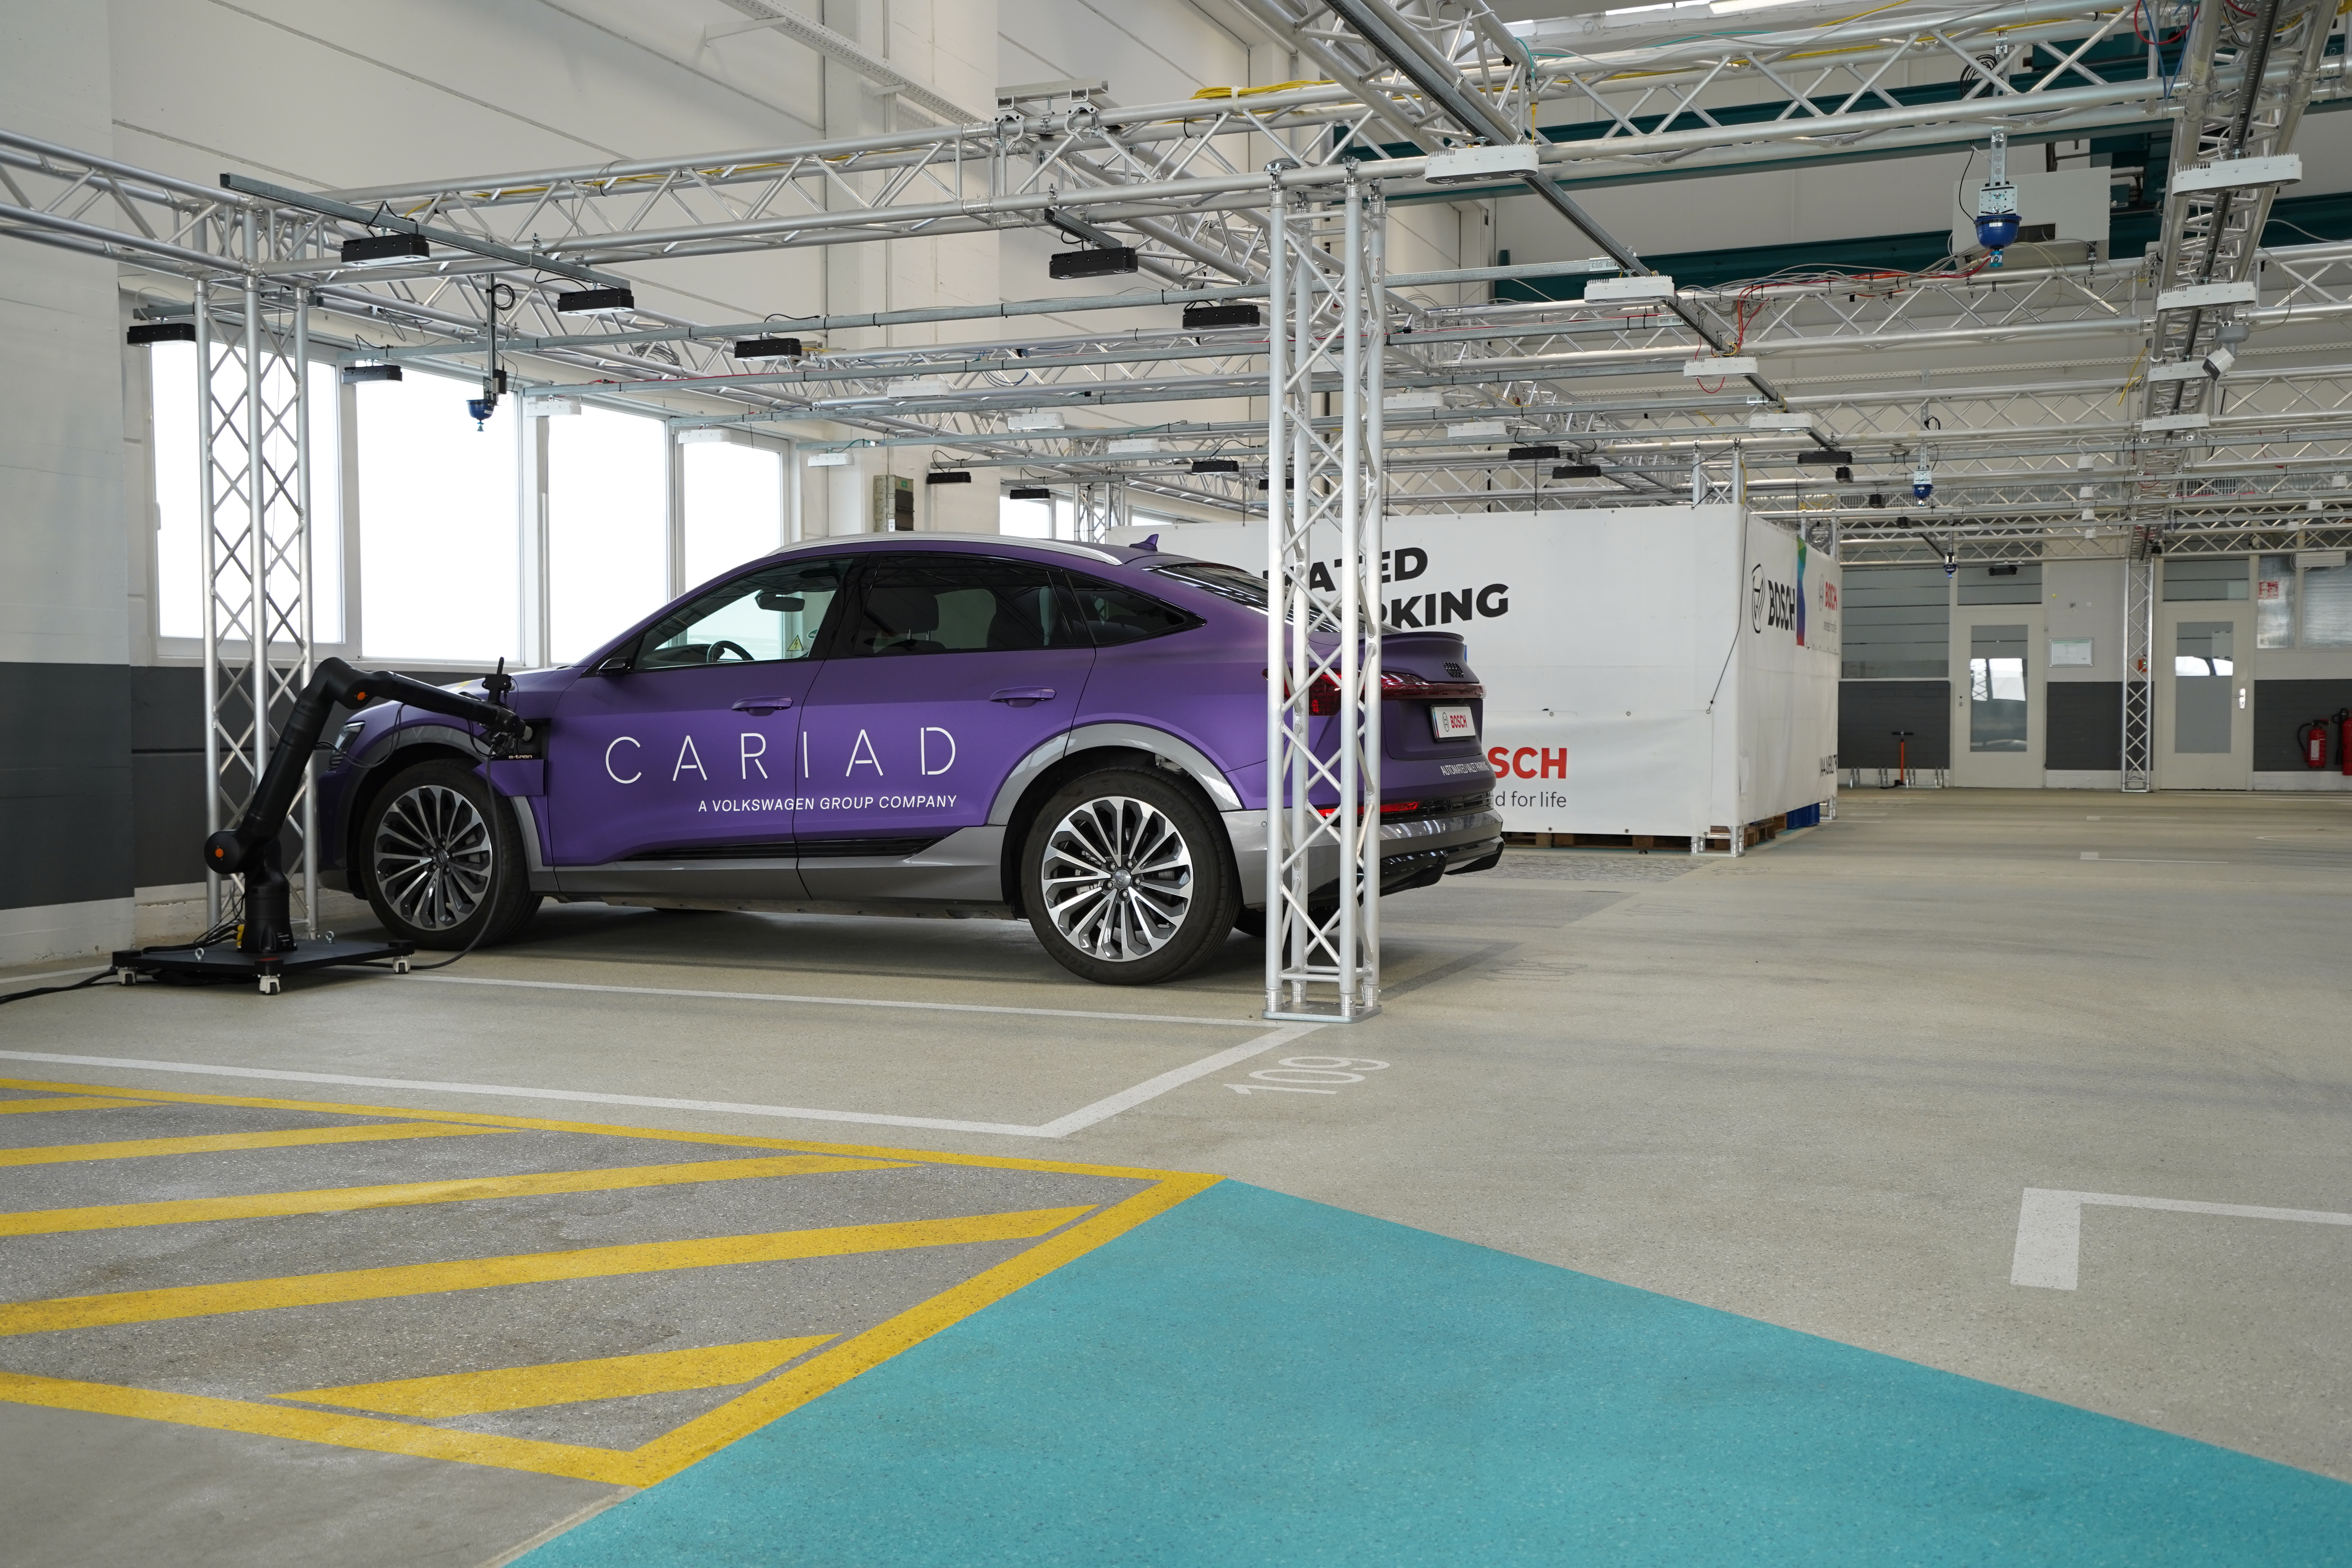 Servizio di ricarica autonoma per i veicoli elettrici grazie alla collaborazione tra Bosch e Cariad, consociata di VW 